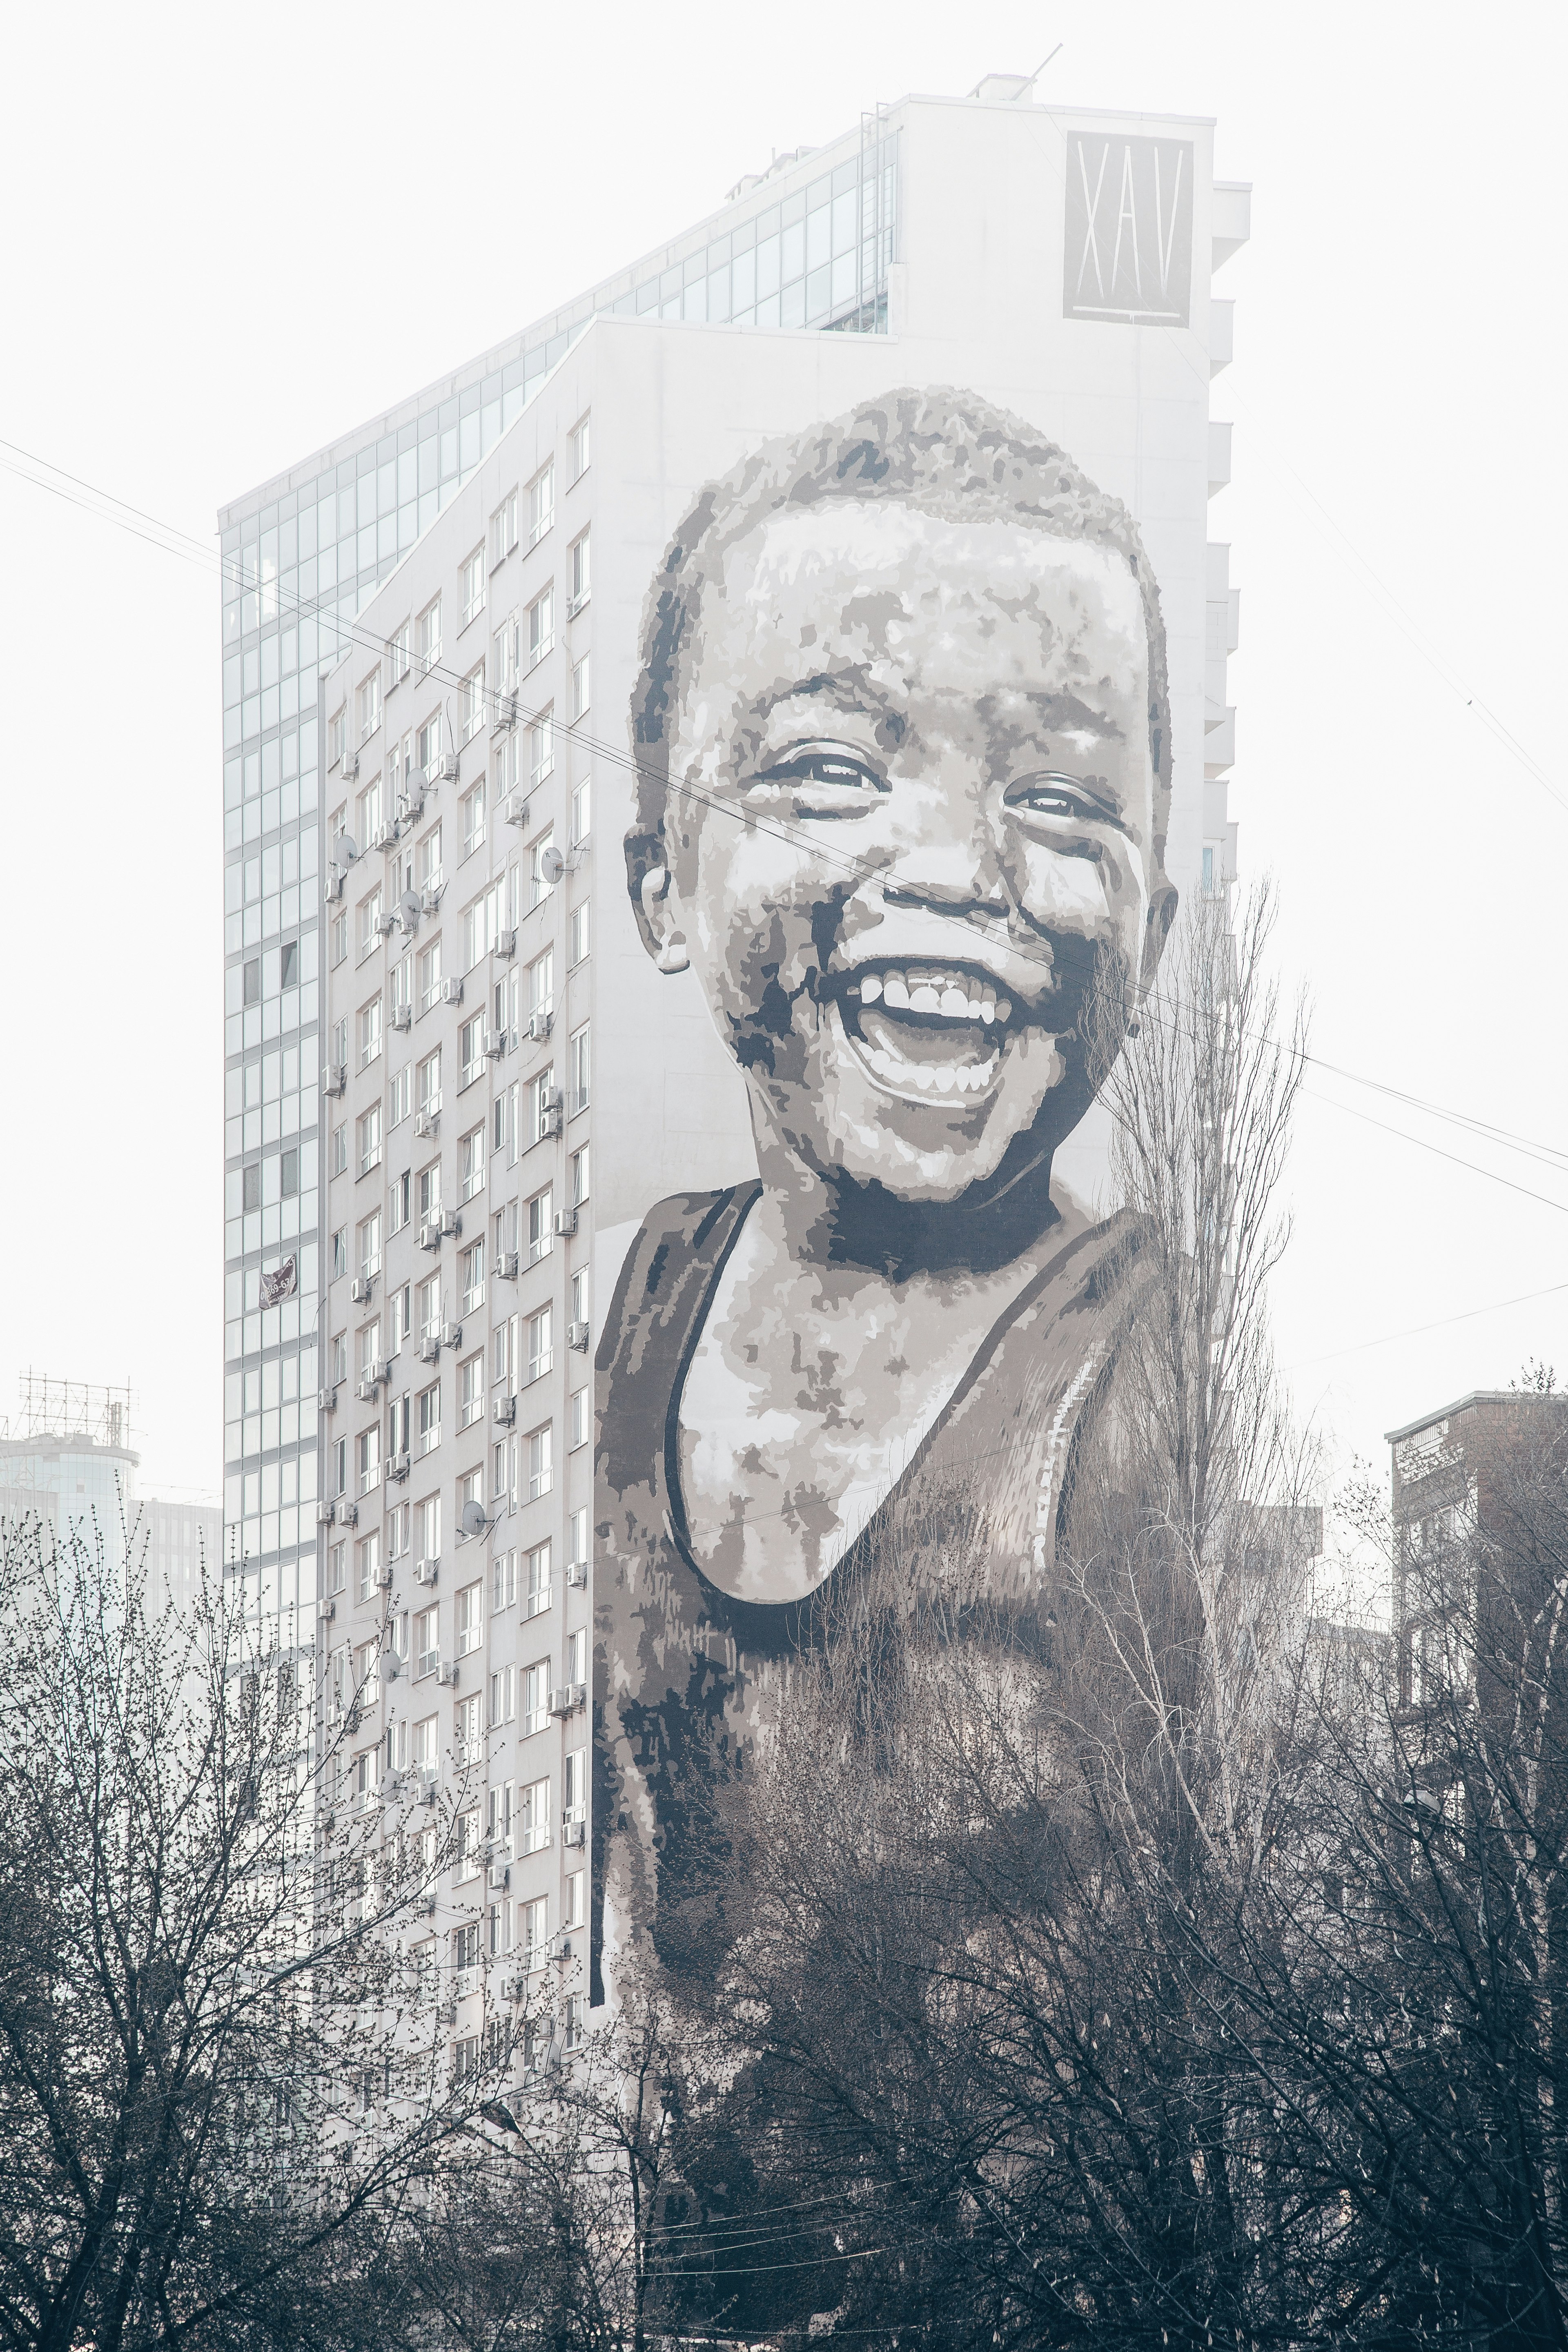 child laughing graffiti art on wall